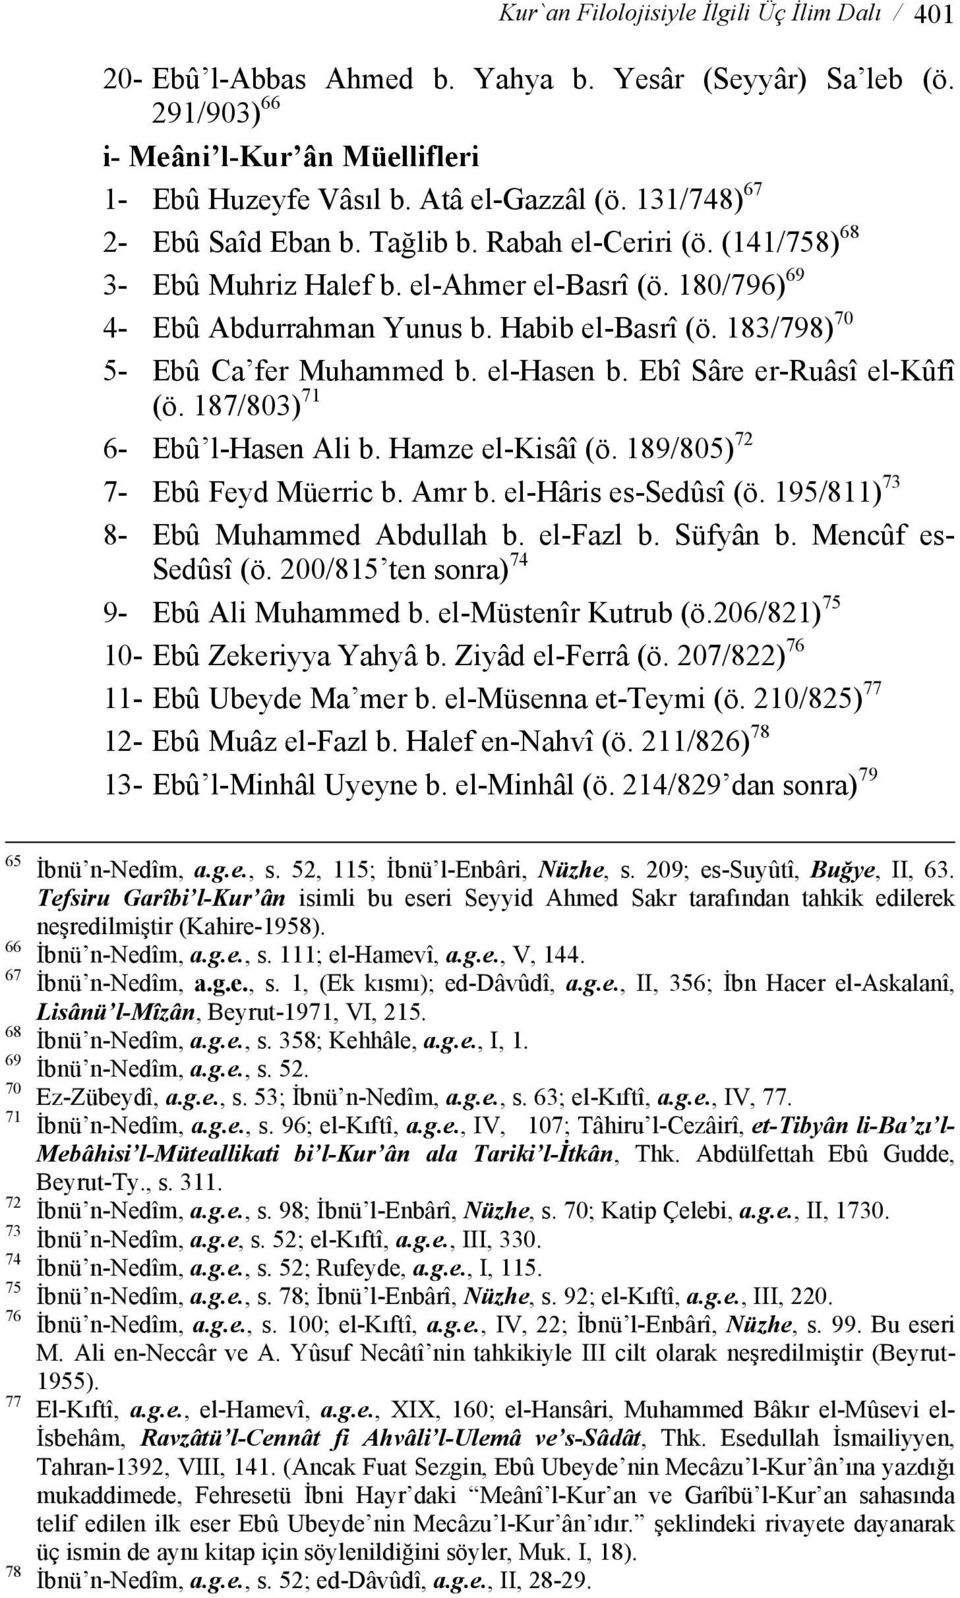 183/798) 70 5- Ebû Ca fer Muhammed b. el-hasen b. Ebî Sâre er-ruâsî el-kûfî (ö. 187/803) 71 6- Ebû l-hasen Ali b. Hamze el-kisâî (ö. 189/805) 72 7- Ebû Feyd Müerric b. Amr b. el-hâris es-sedûsî (ö.